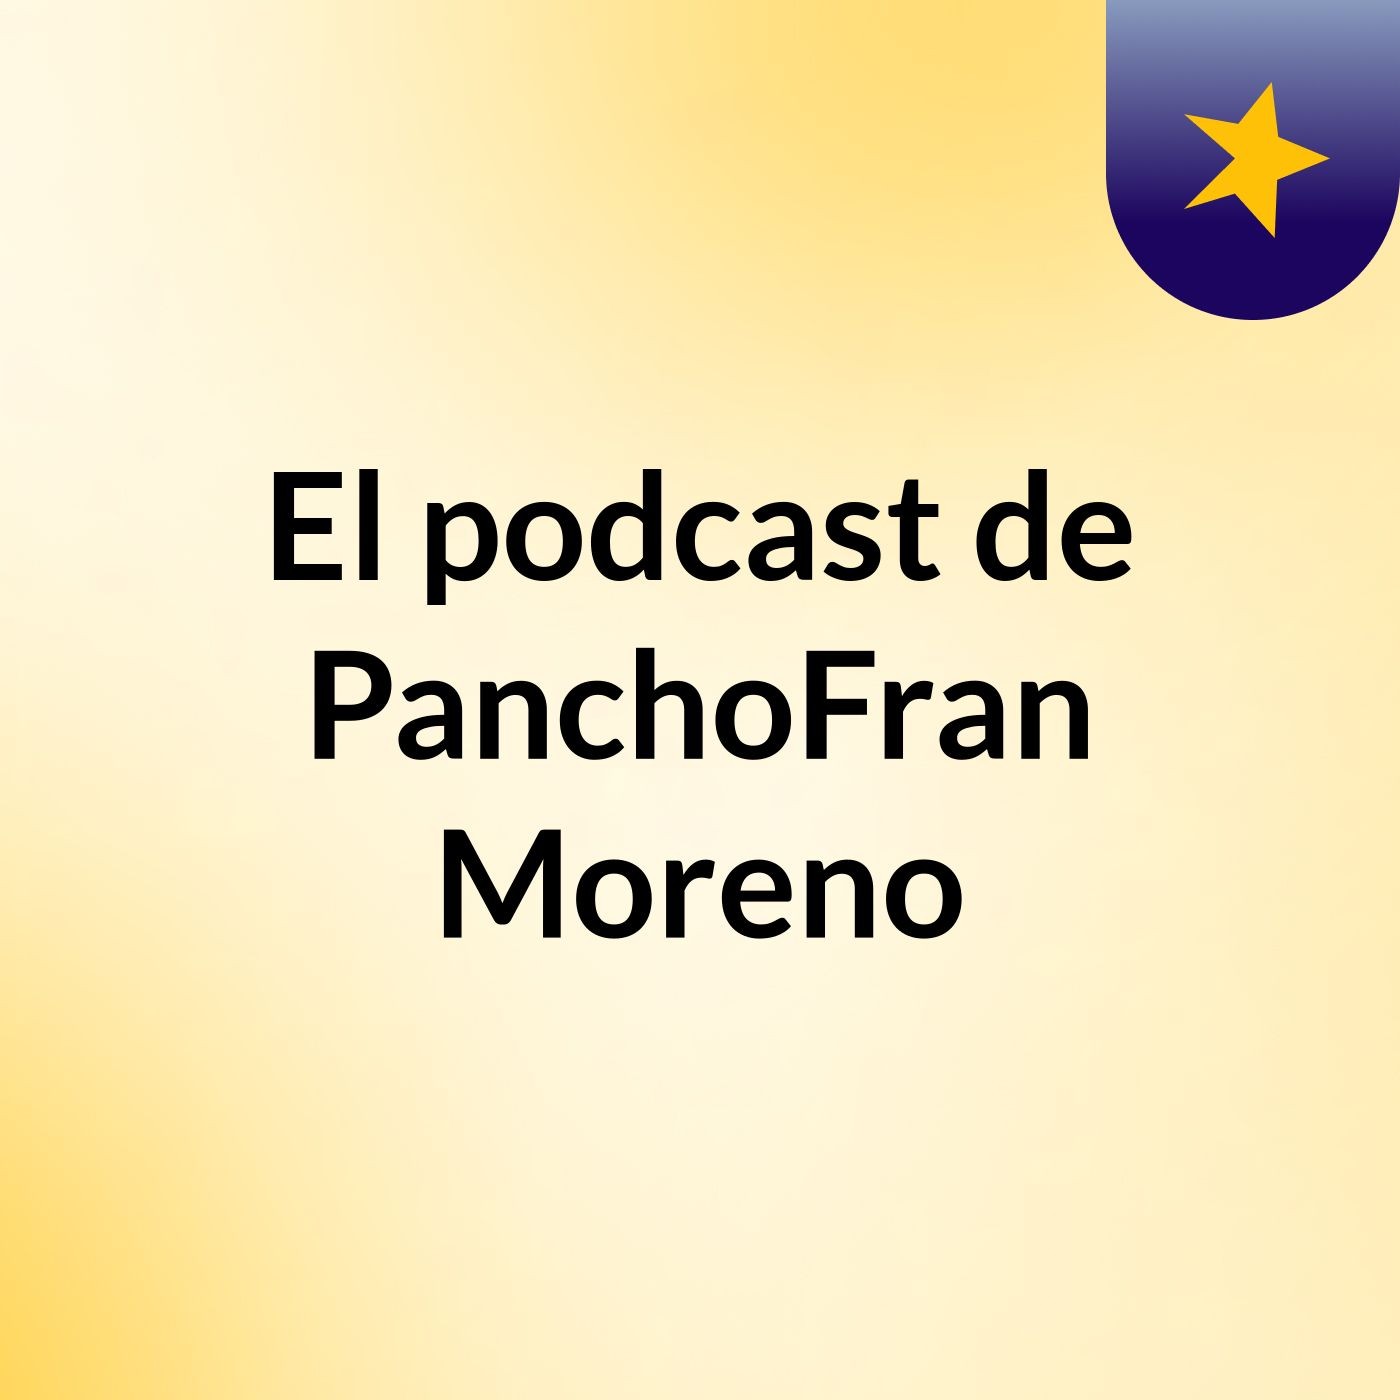 El podcast de PanchoFran Moreno